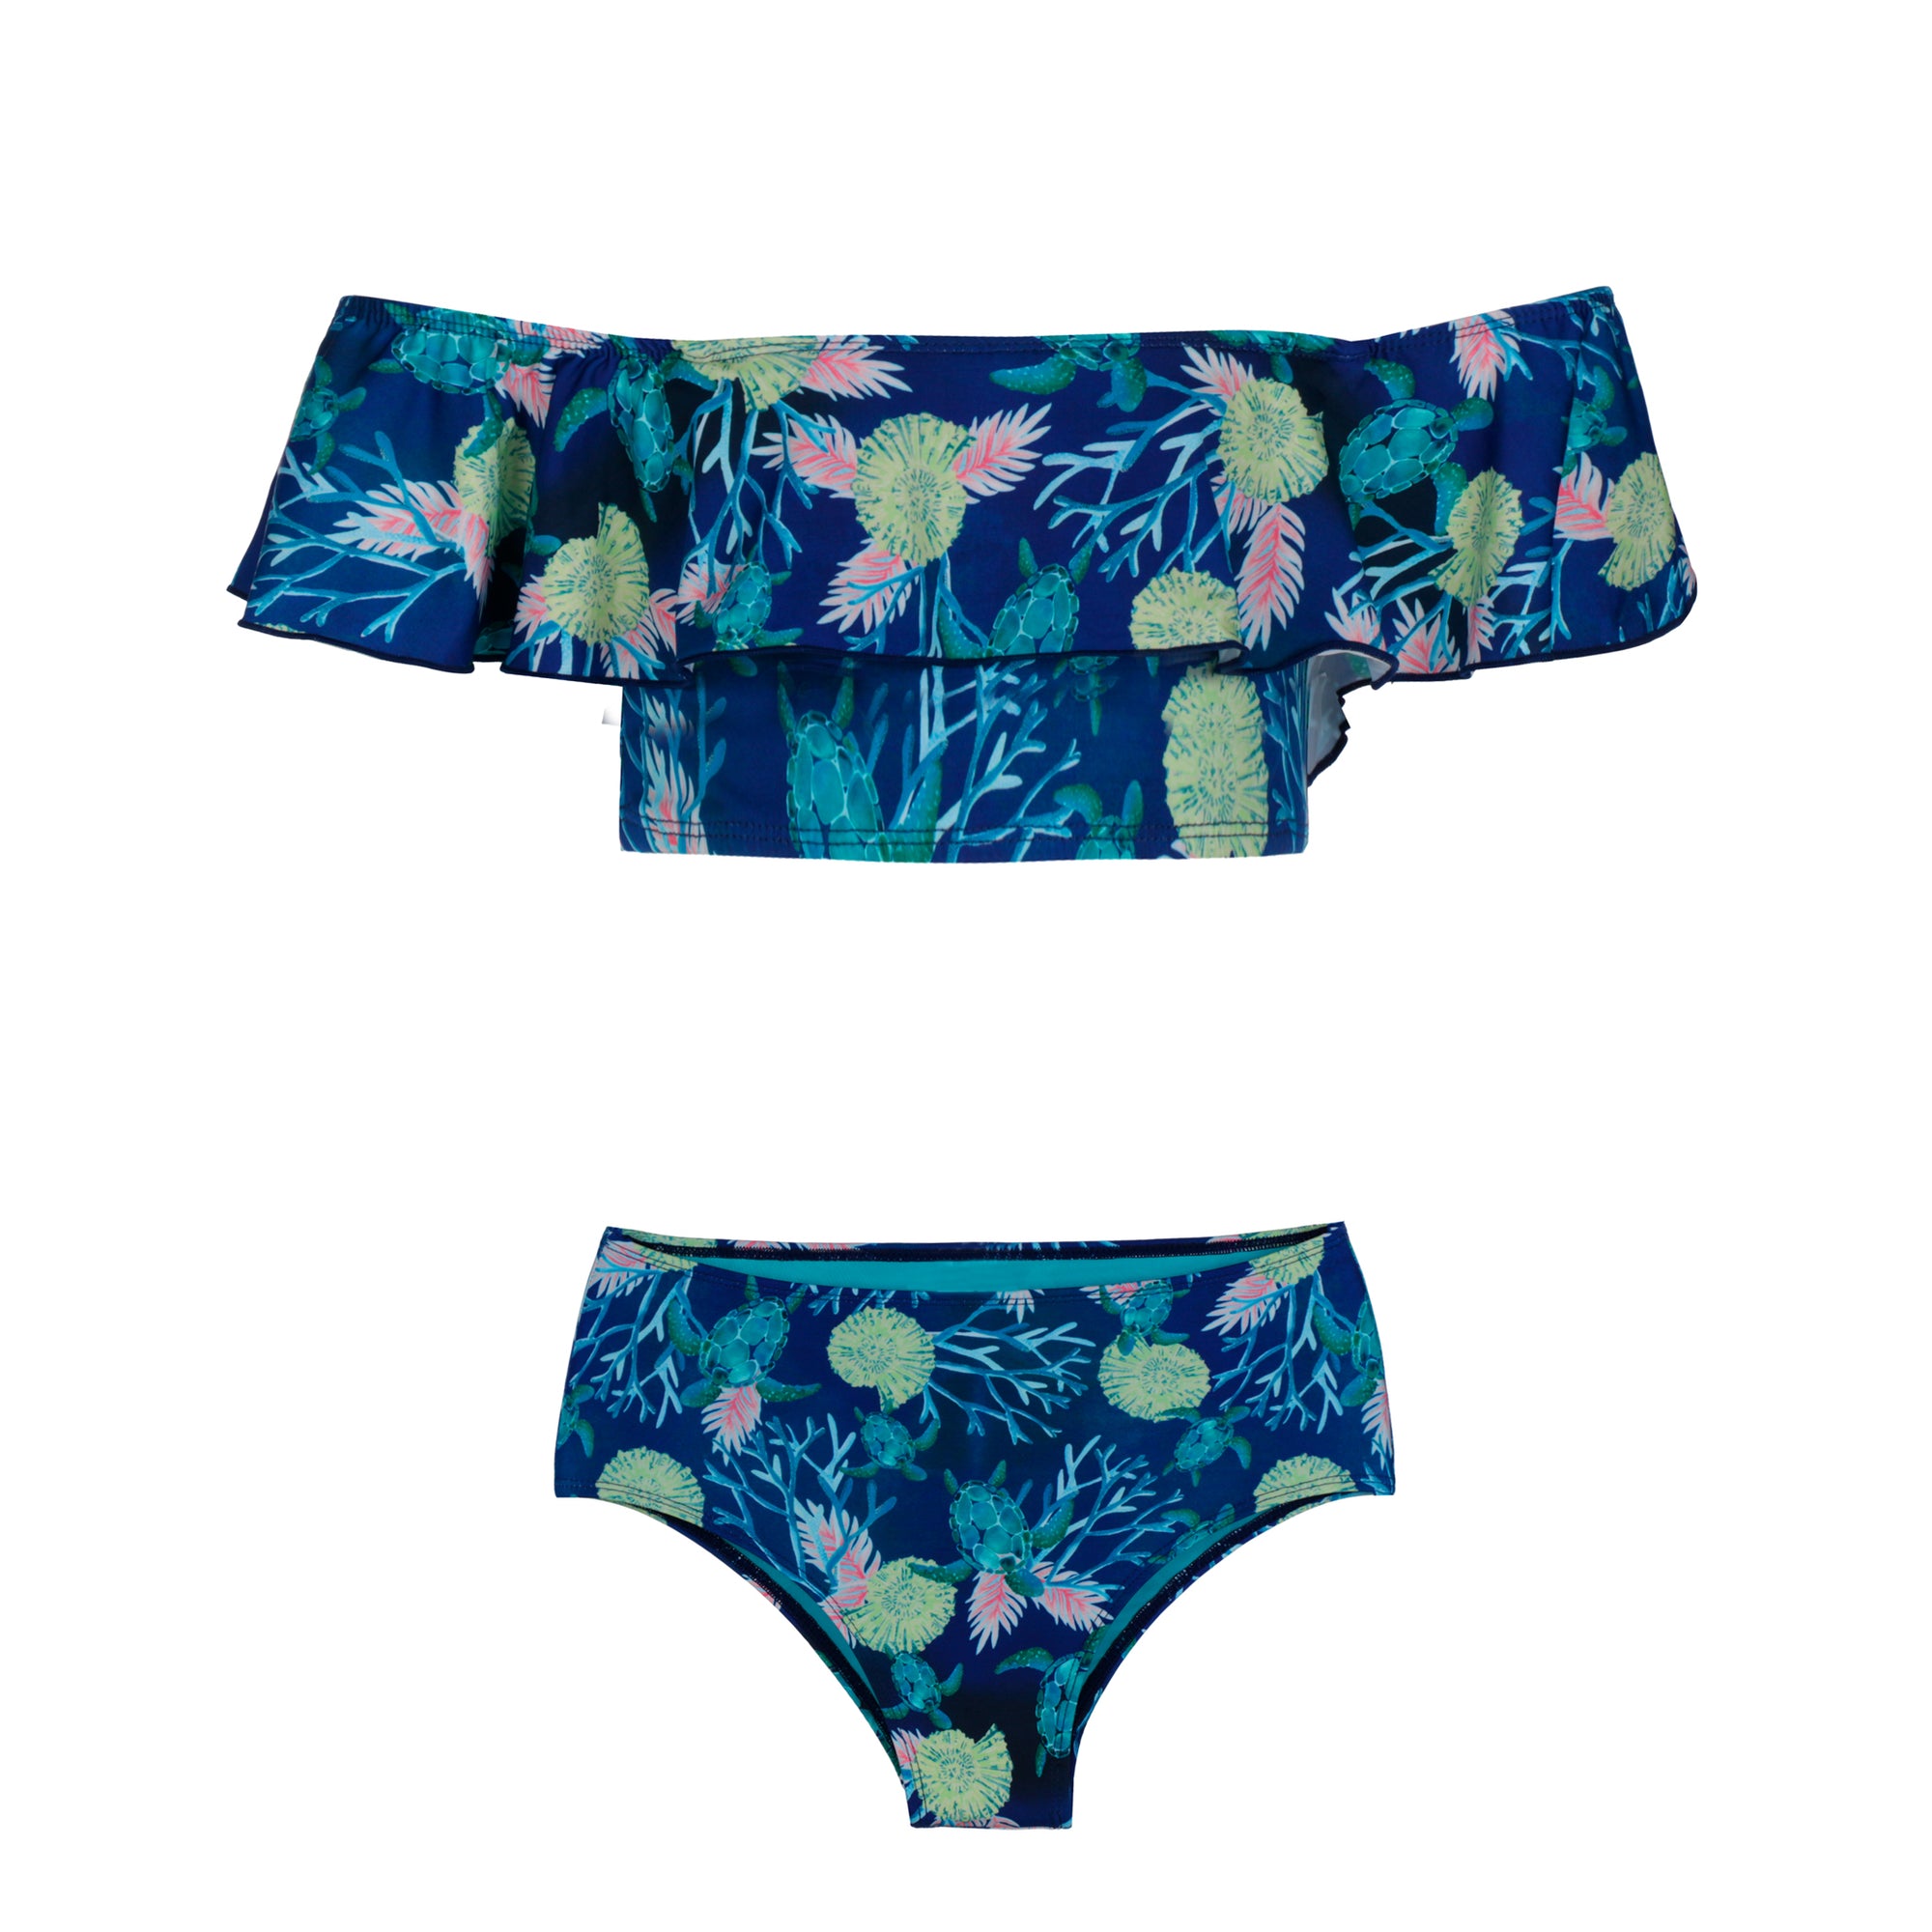 Biquíni Adolescente de Moda Praia Infantil com Top Ciganinha e Calcinha Hot Pants na Estampa Tartaruga Azul Marinho da Lili Sampedro